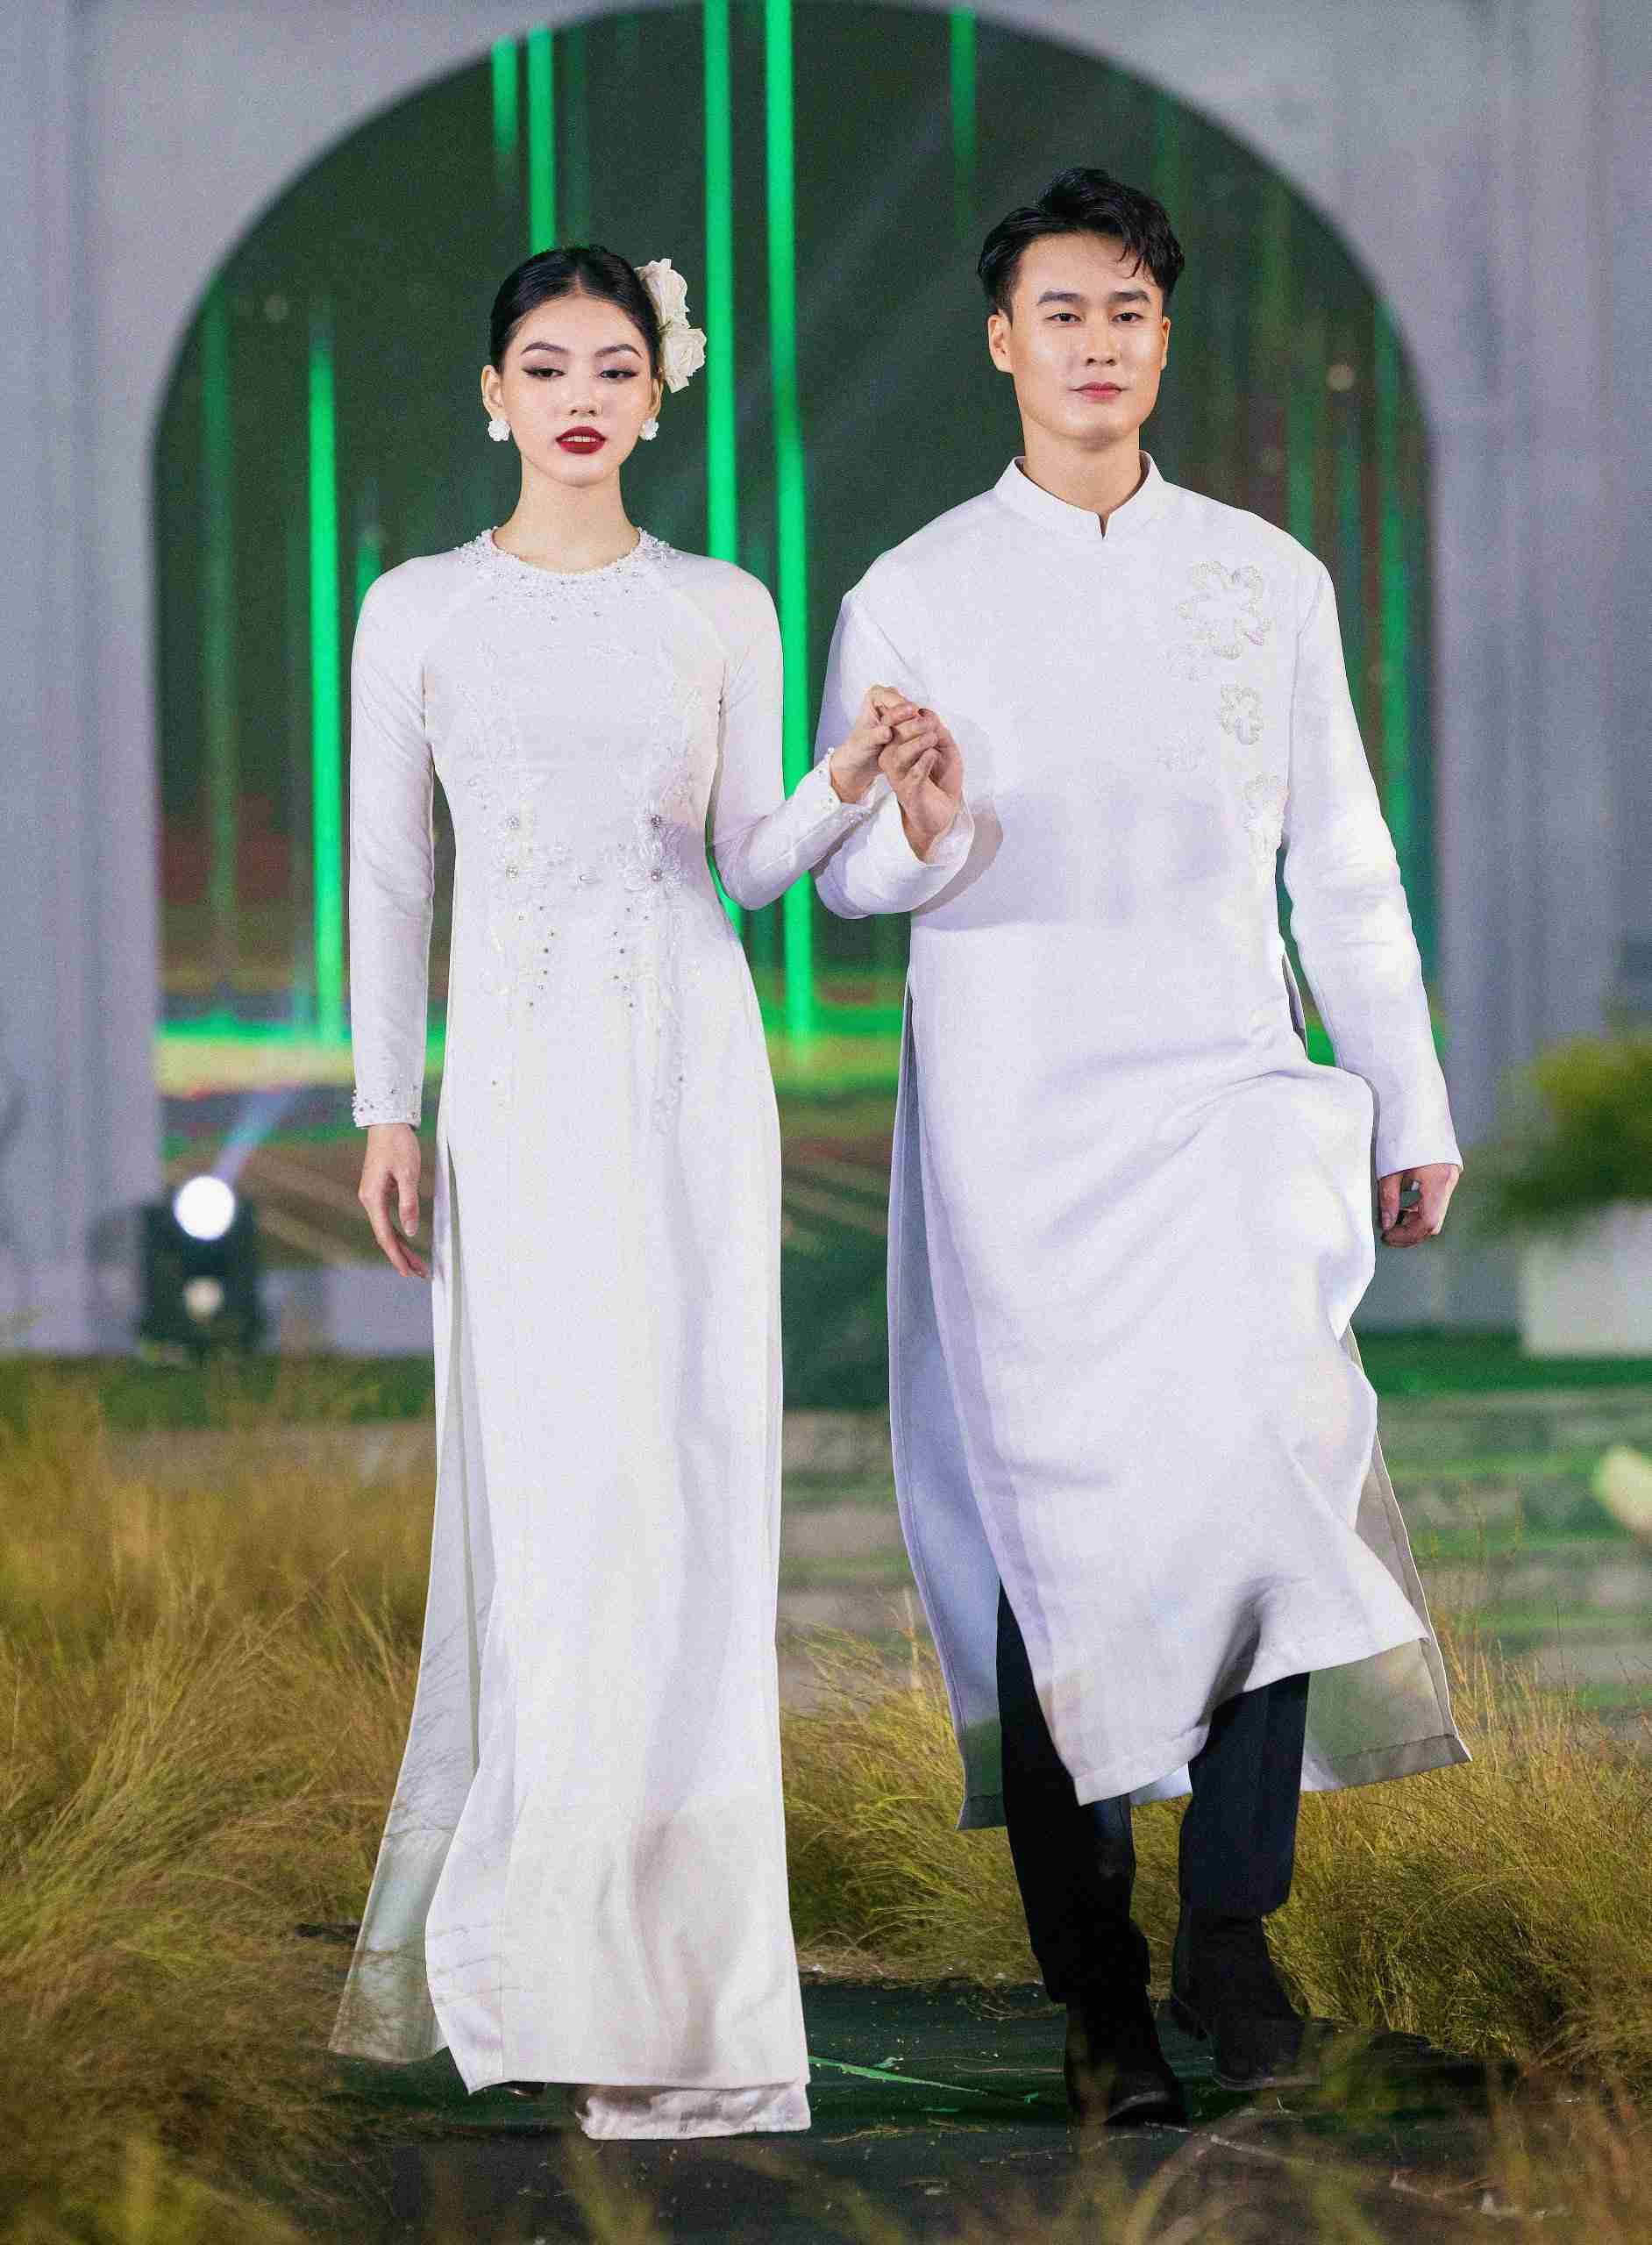 Đây là lần thứ ba nhà thiết kế (NTK) Dũng Nguyễn giới thiệu những thiết kế áo dài trong năm 2023, sau sự thành công của 2 BST Diễm Ngọc và Chốn kinh kỳ.